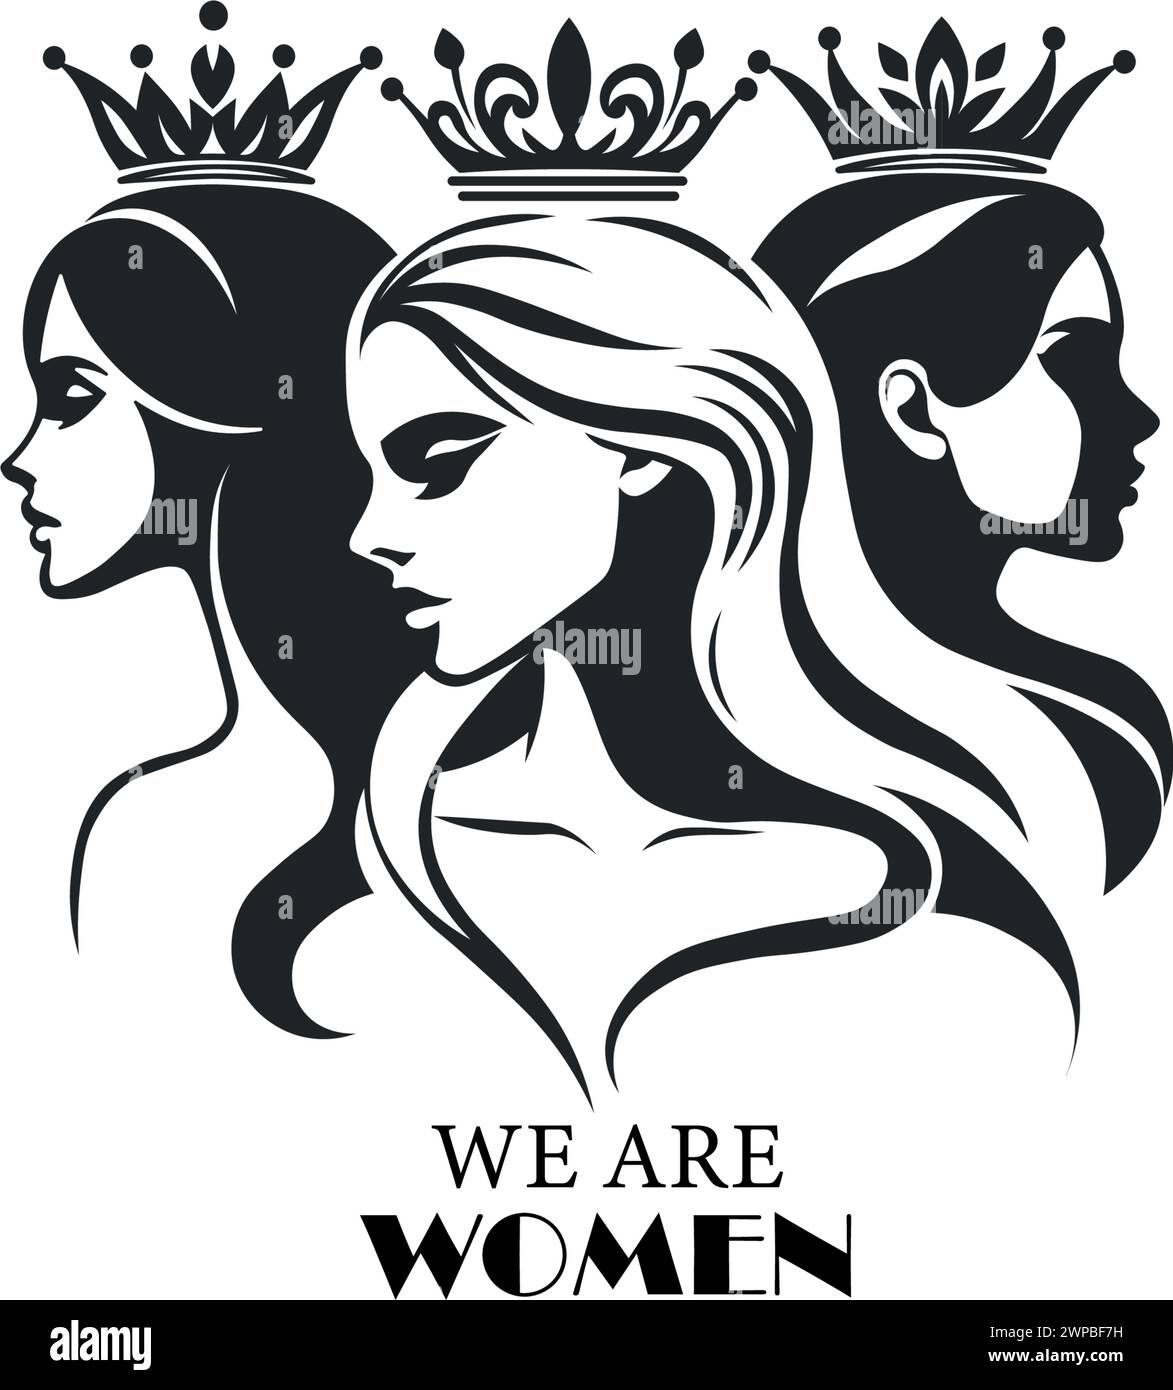 Vektor-Illustration Wir sind Frauen, Poster für internationalen Frauentag oder Muttertag Stock Vektor